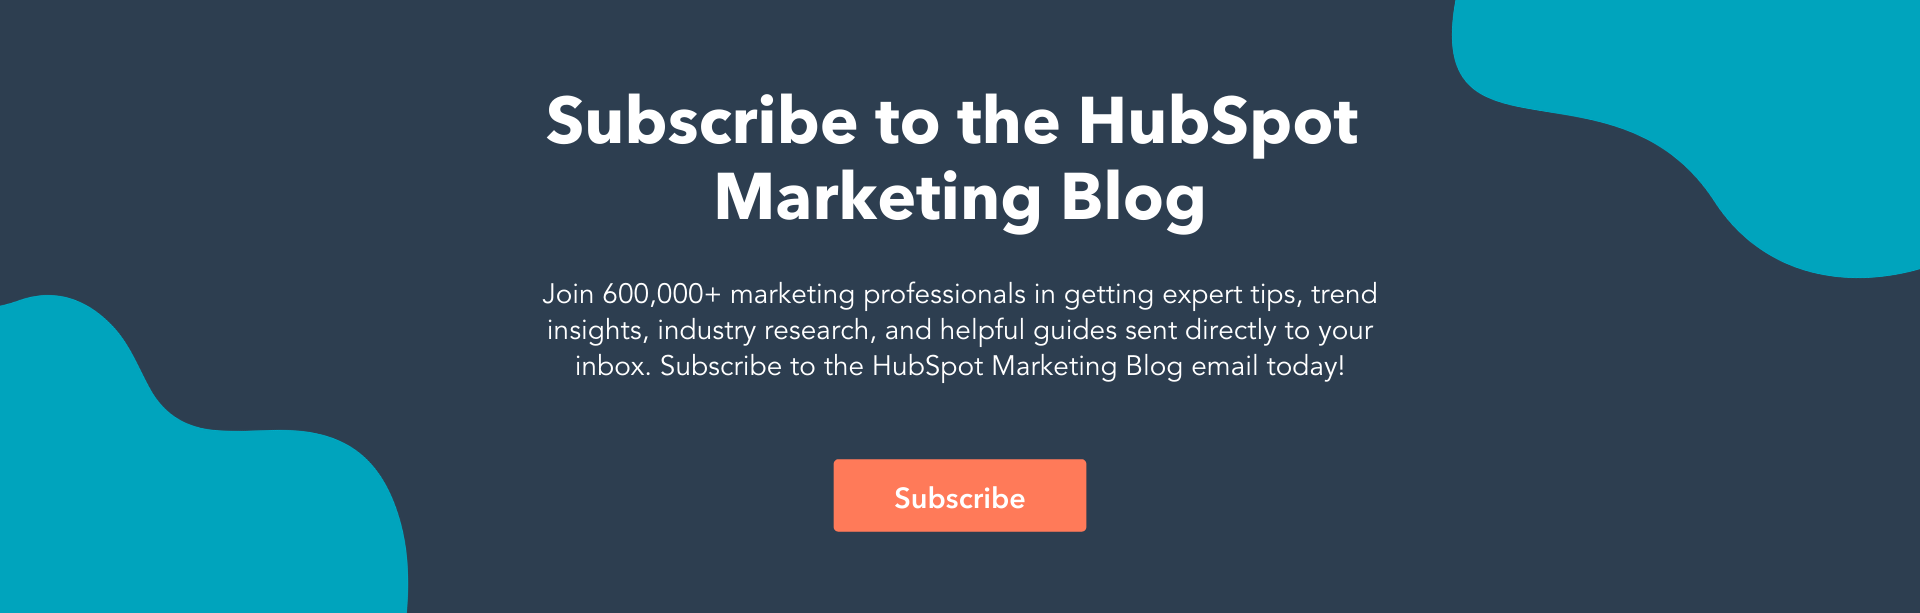 Hubspot-Marketing-Blog